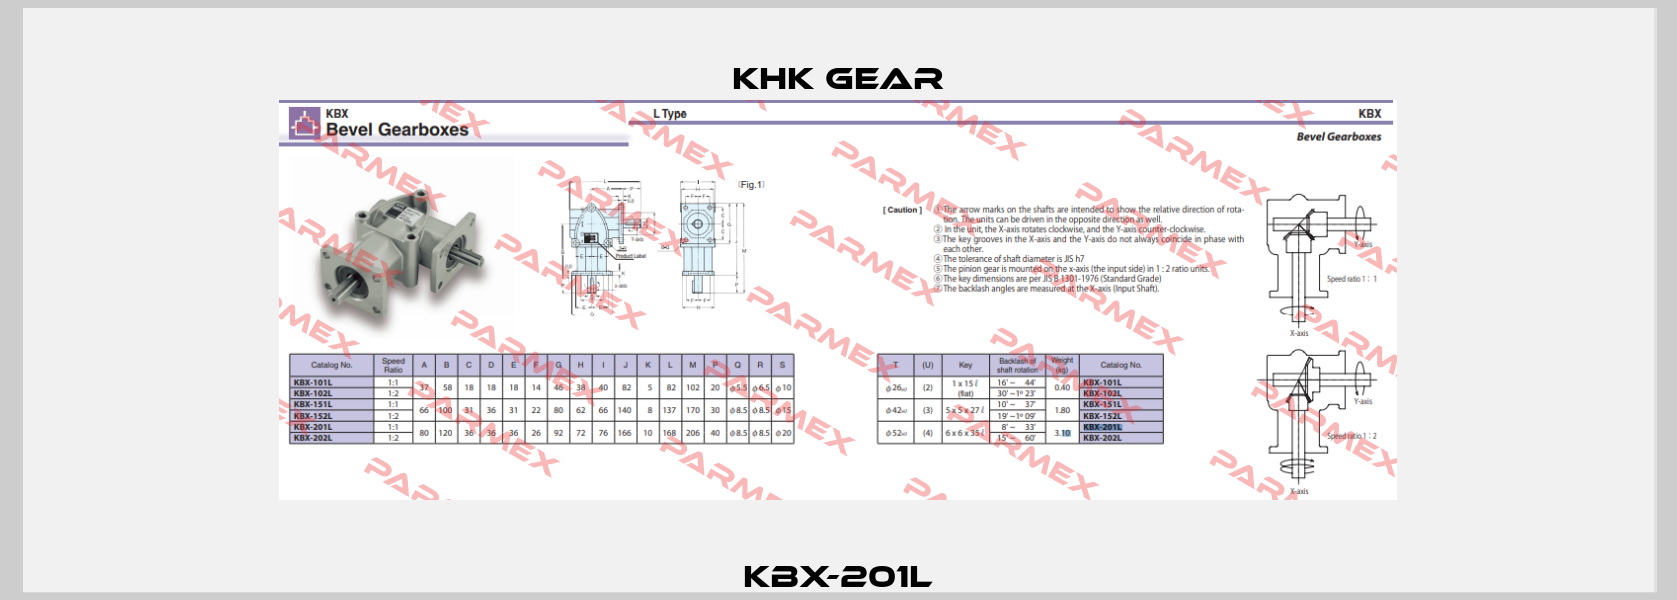 KBX-201L KHK GEAR